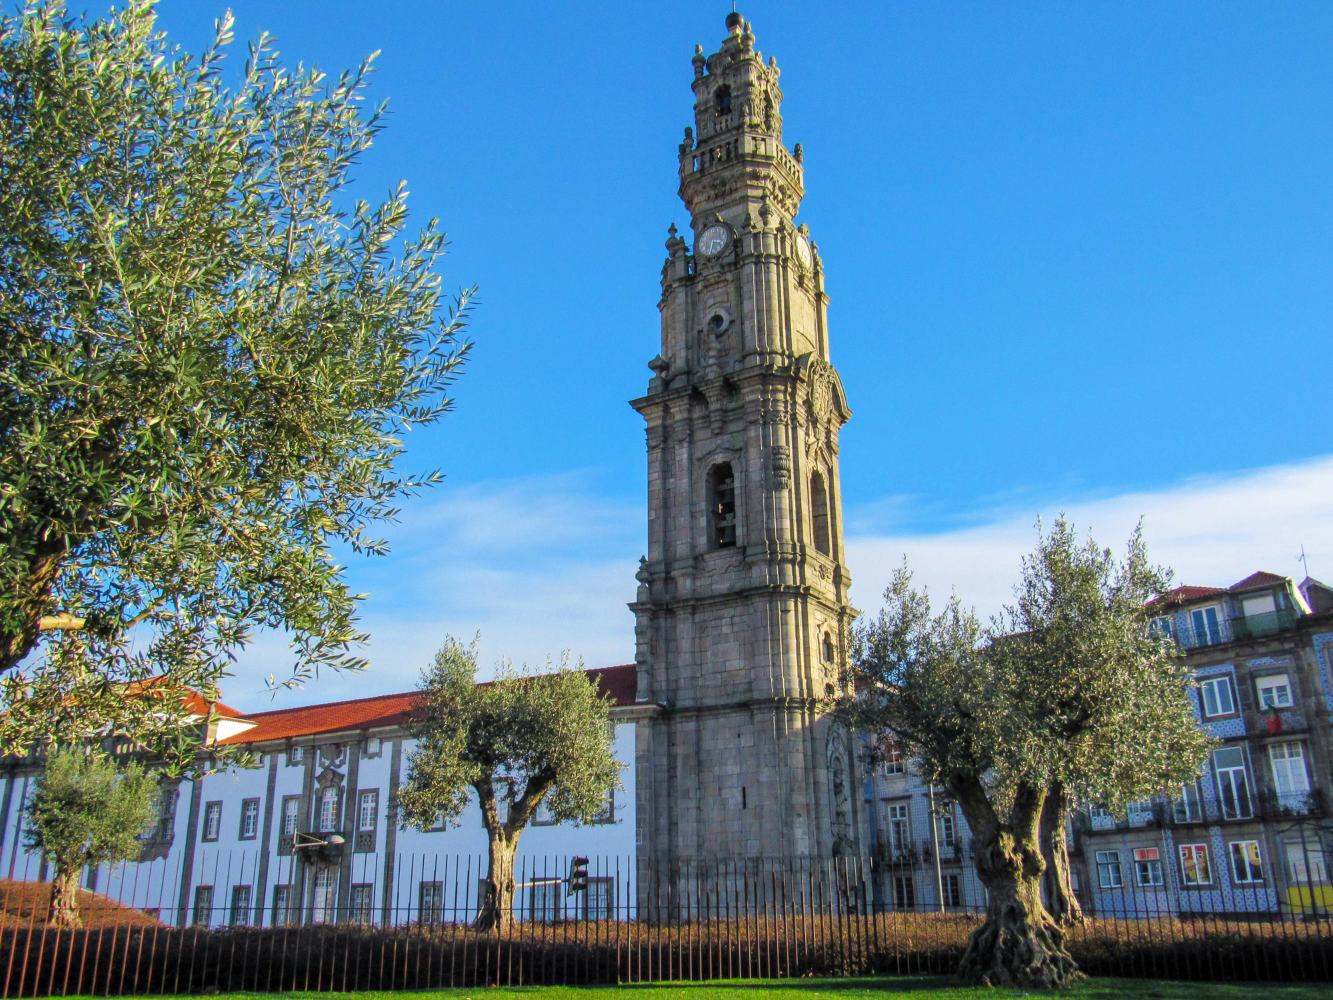 Torre dos Clérigos no Porto